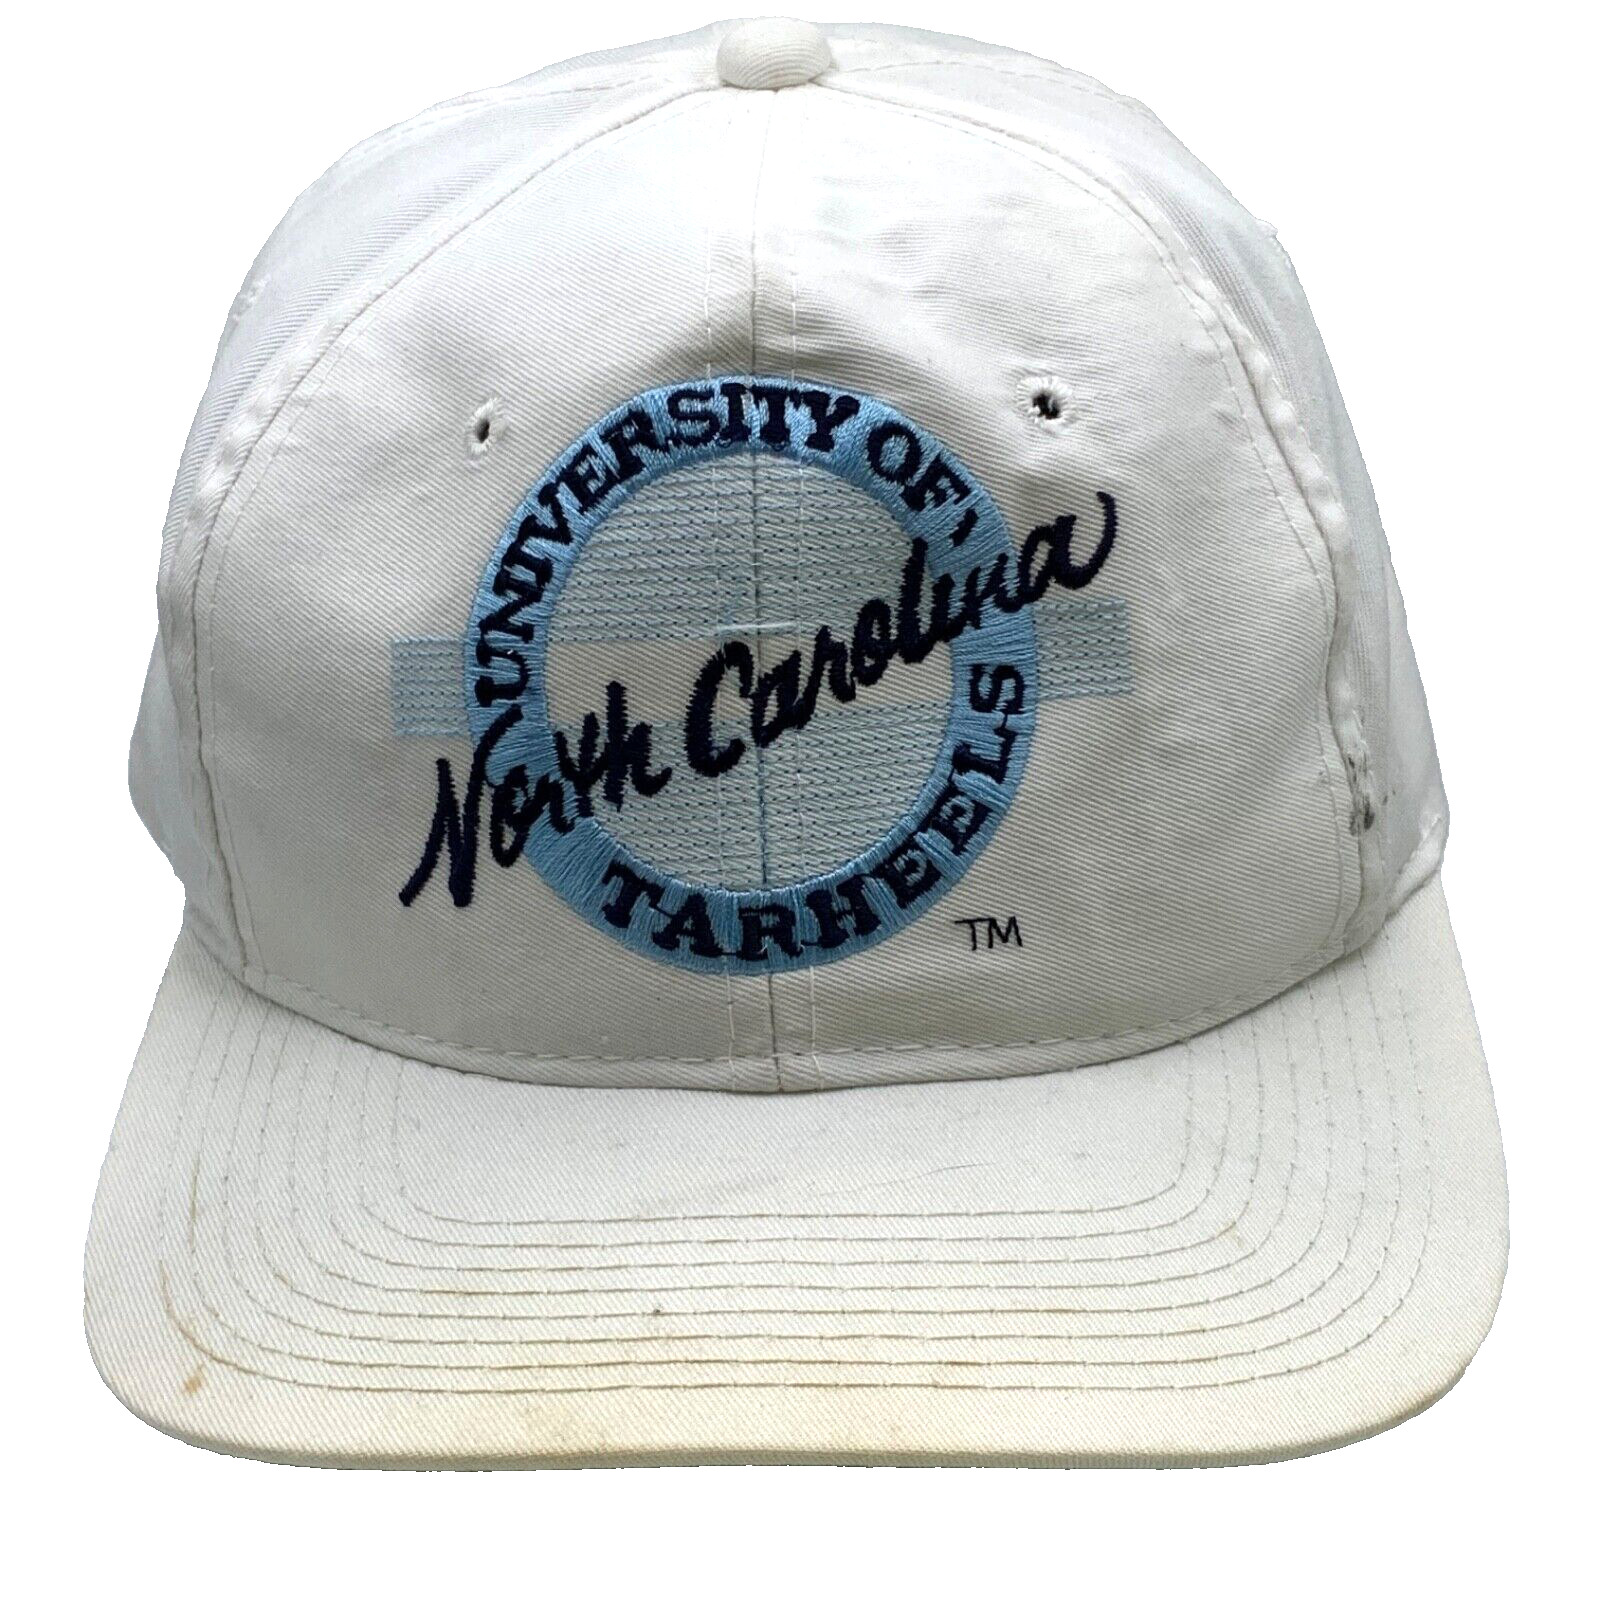 Vintage University Of North Carolina Tarheels Snapback Hat Cap Adjustable Ncaa